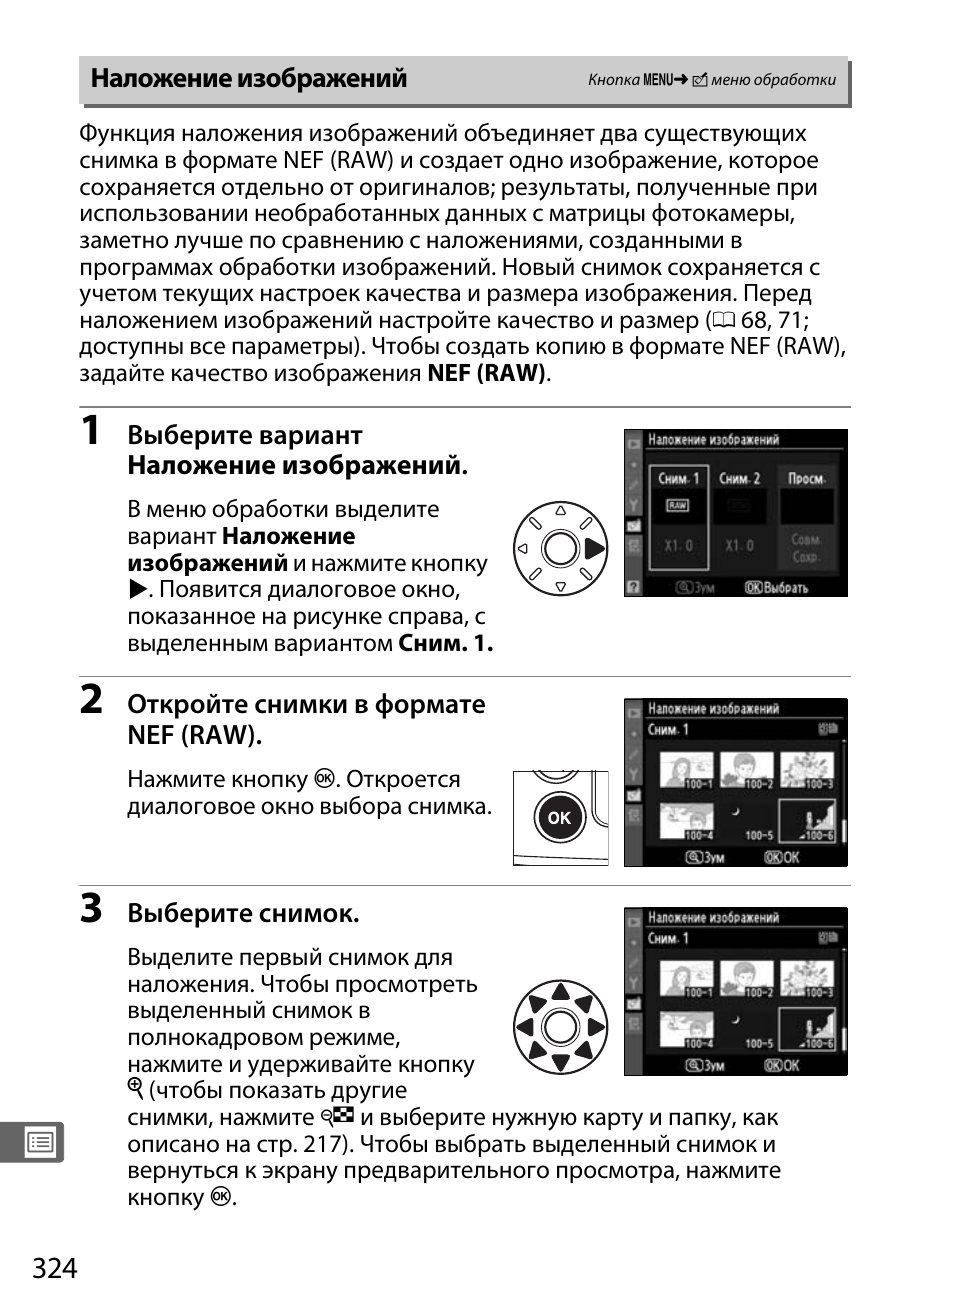 Наложение изображений | Инструкция по эксплуатации Nikon D300s | Страница 350 / 432